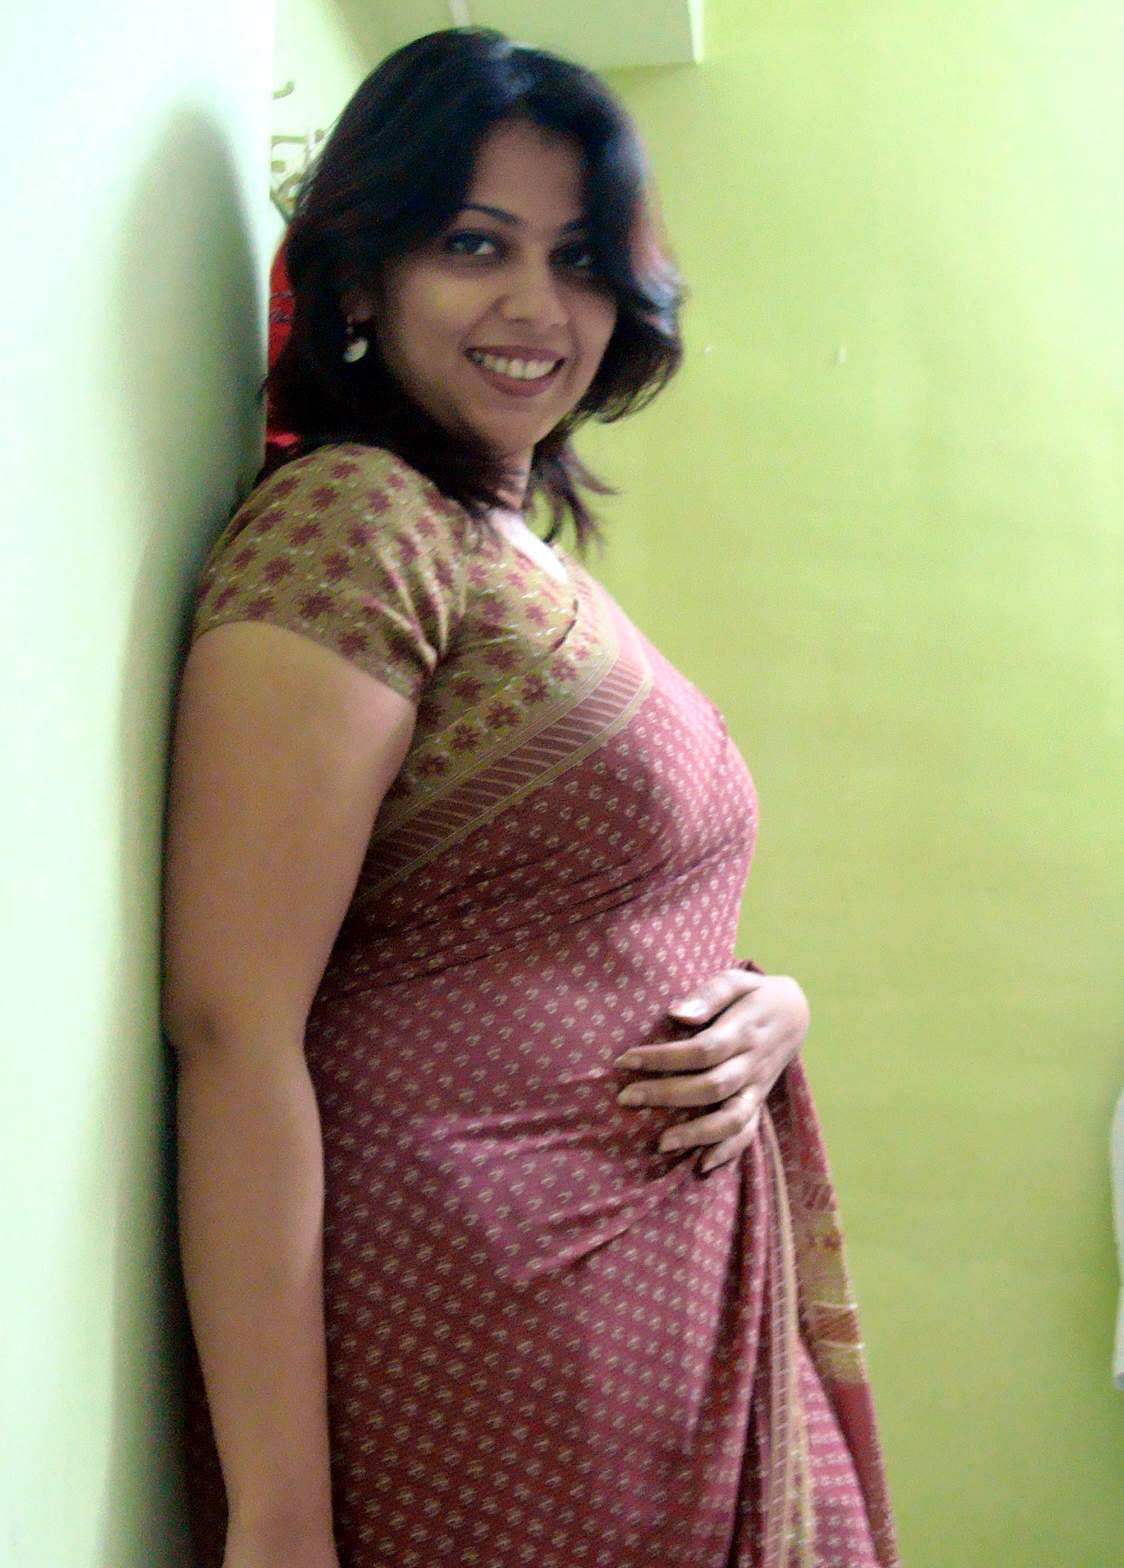 Bride Fat Boobs - Hot Telugu Bhabhi Big Boobs Bedroom Sexy Girls Photos - Big ...